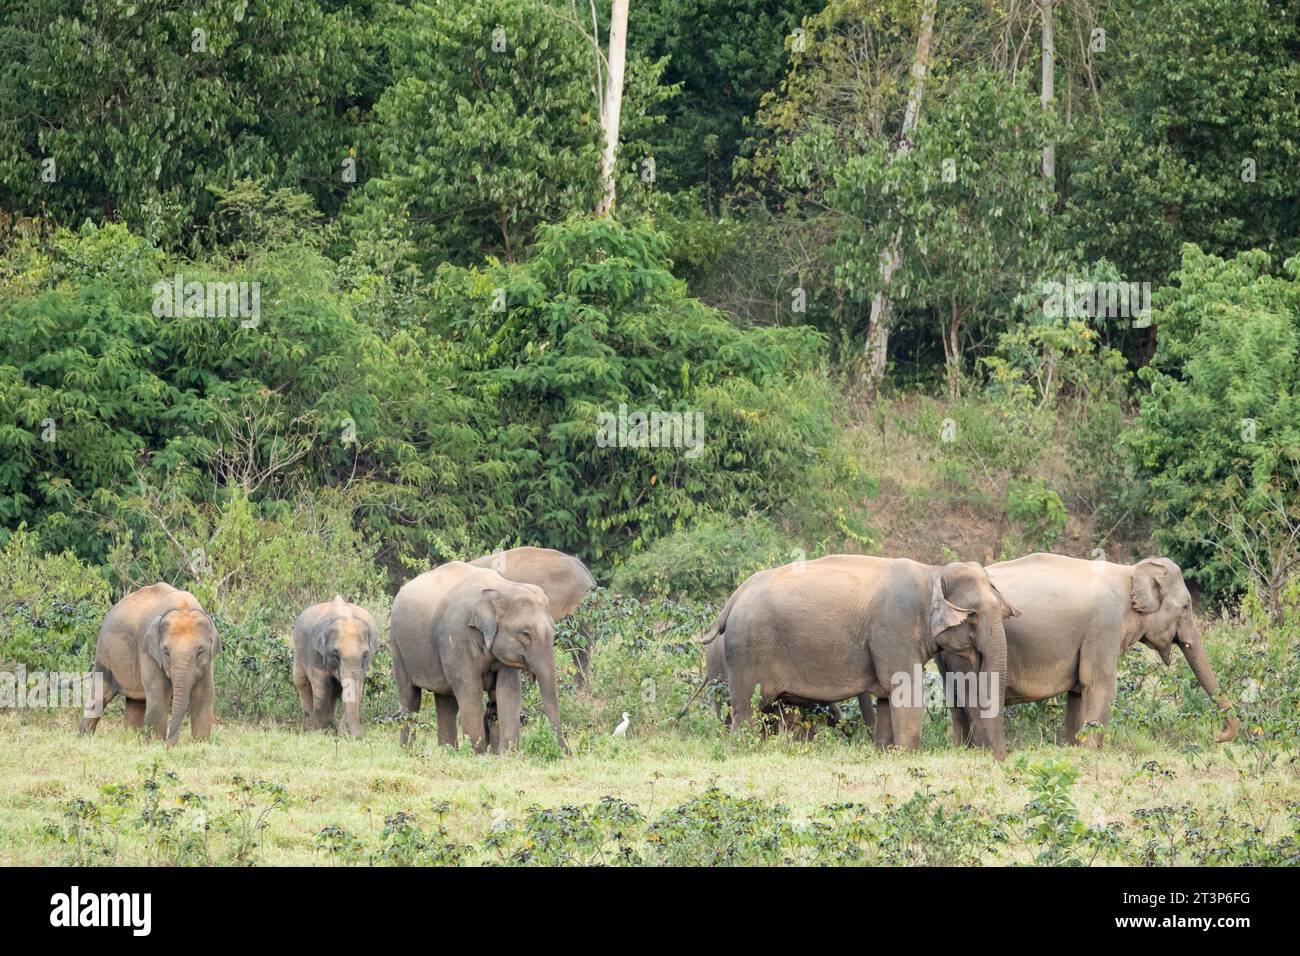 Der asiatische Elefant ist ein großes Säugetier in Thailand. Es ist ein wildes Tier und befindet sich im Tiefland. In der Gruppe haben Erwachsene männlich und weiblich. Stockfoto